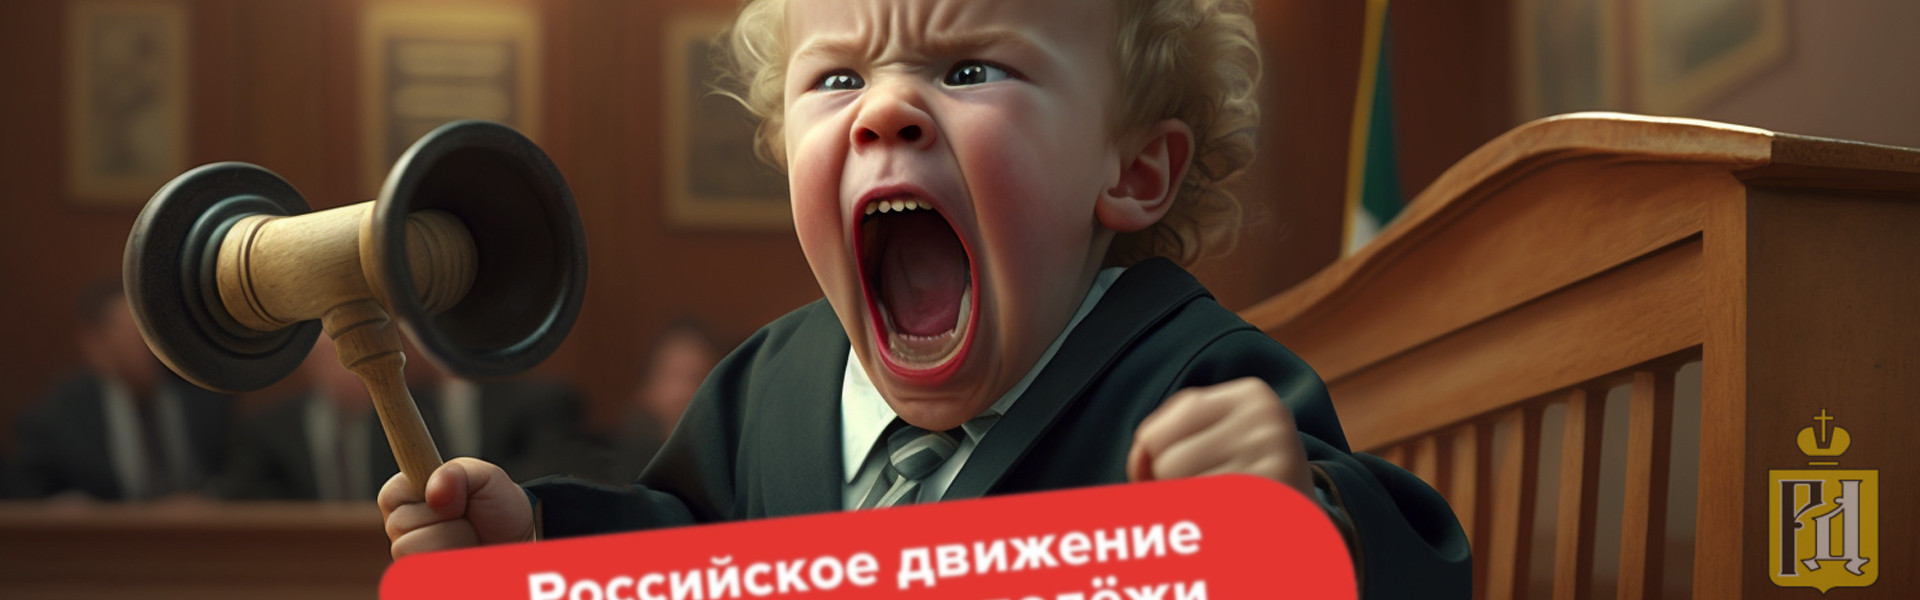 Новый уровень ювеналки в Петербурге: дети и подростки из «Движения первых» примут участие в КДН-судилище над родителями